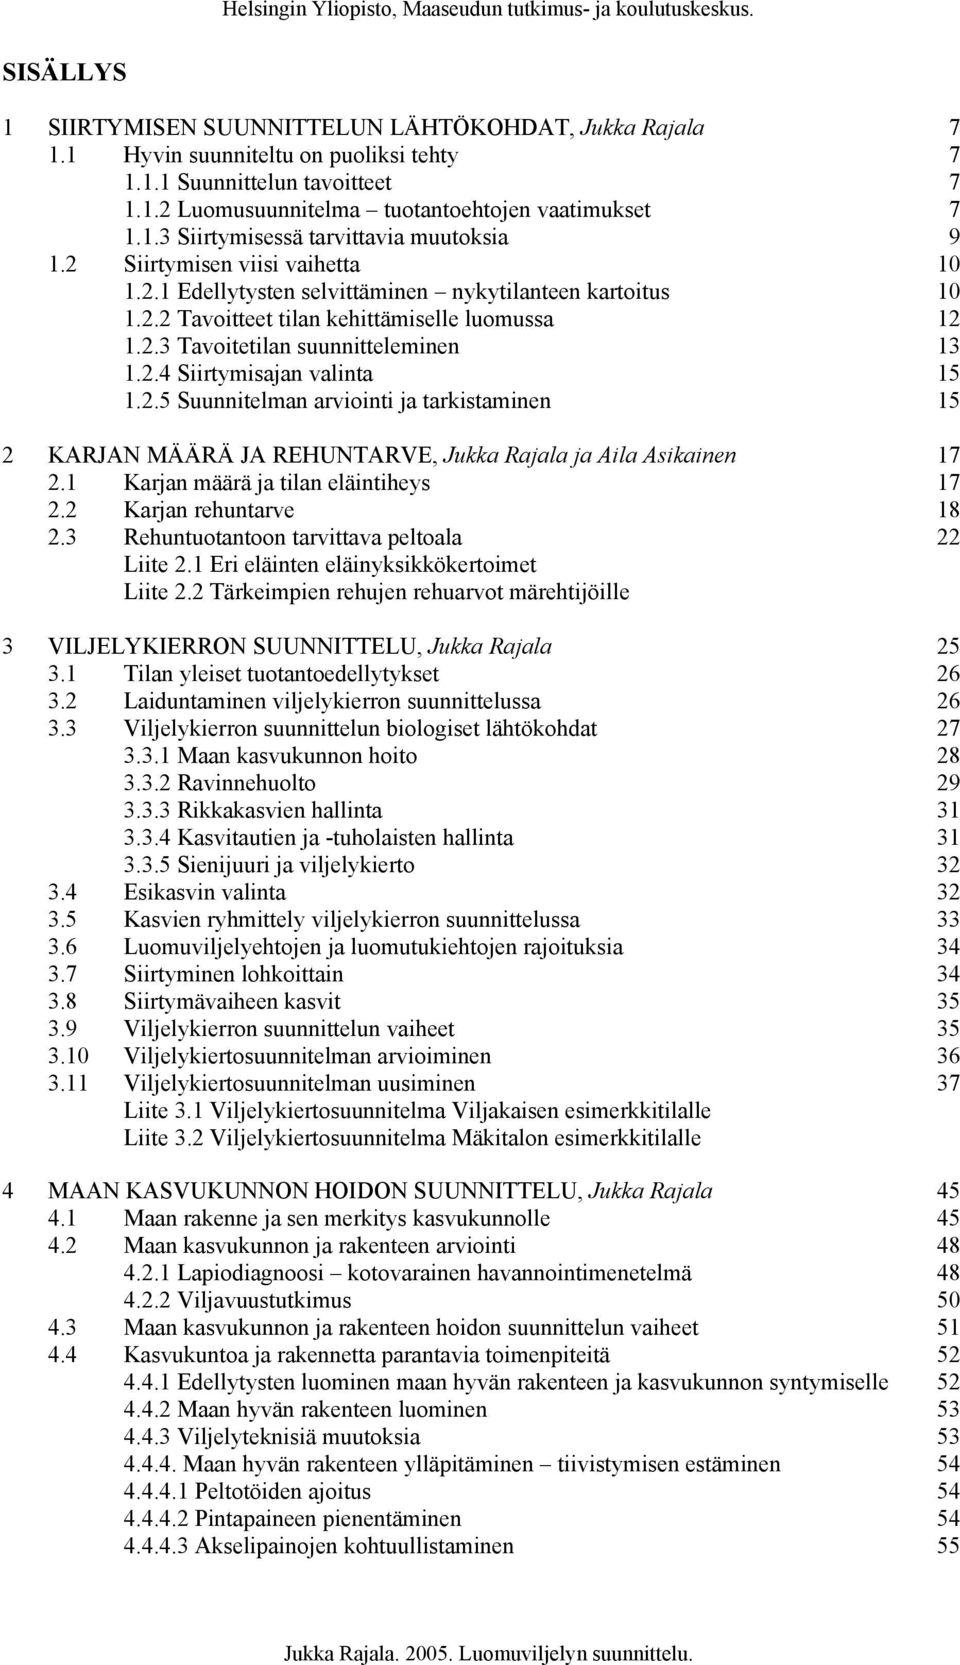 2.5 Suunnitelman arviointi ja tarkistaminen 15 2 KARJAN MÄÄRÄ JA REHUNTARVE, Jukka Rajala ja Aila Asikainen 17 2.1 Karjan määrä ja tilan eläintiheys 17 2.2 Karjan rehuntarve 18 2.